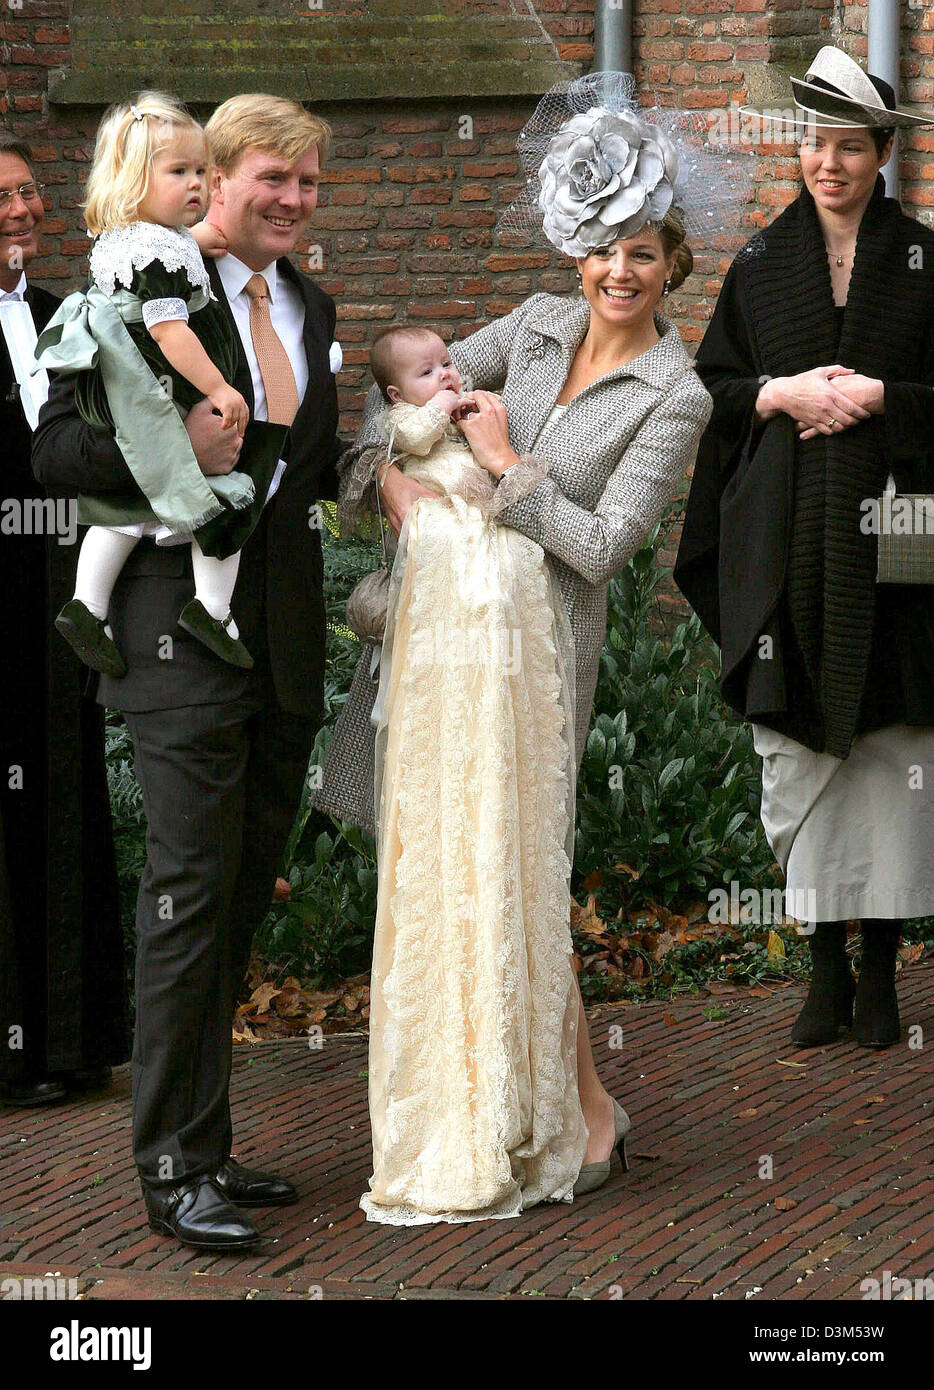 (Afp) - Le Prince néerlandais Willem-Alexander photographié avec sa fille Amalia sur son bras et son épouse la princesse Alexia holding Maxima Princes, à Wassenaar, Pays-Bas, le 19 novembre 2005 . La princesse Alexia va être baptisted dans le Dorskerk à Wassenaar. (Pays-bas) Banque D'Images